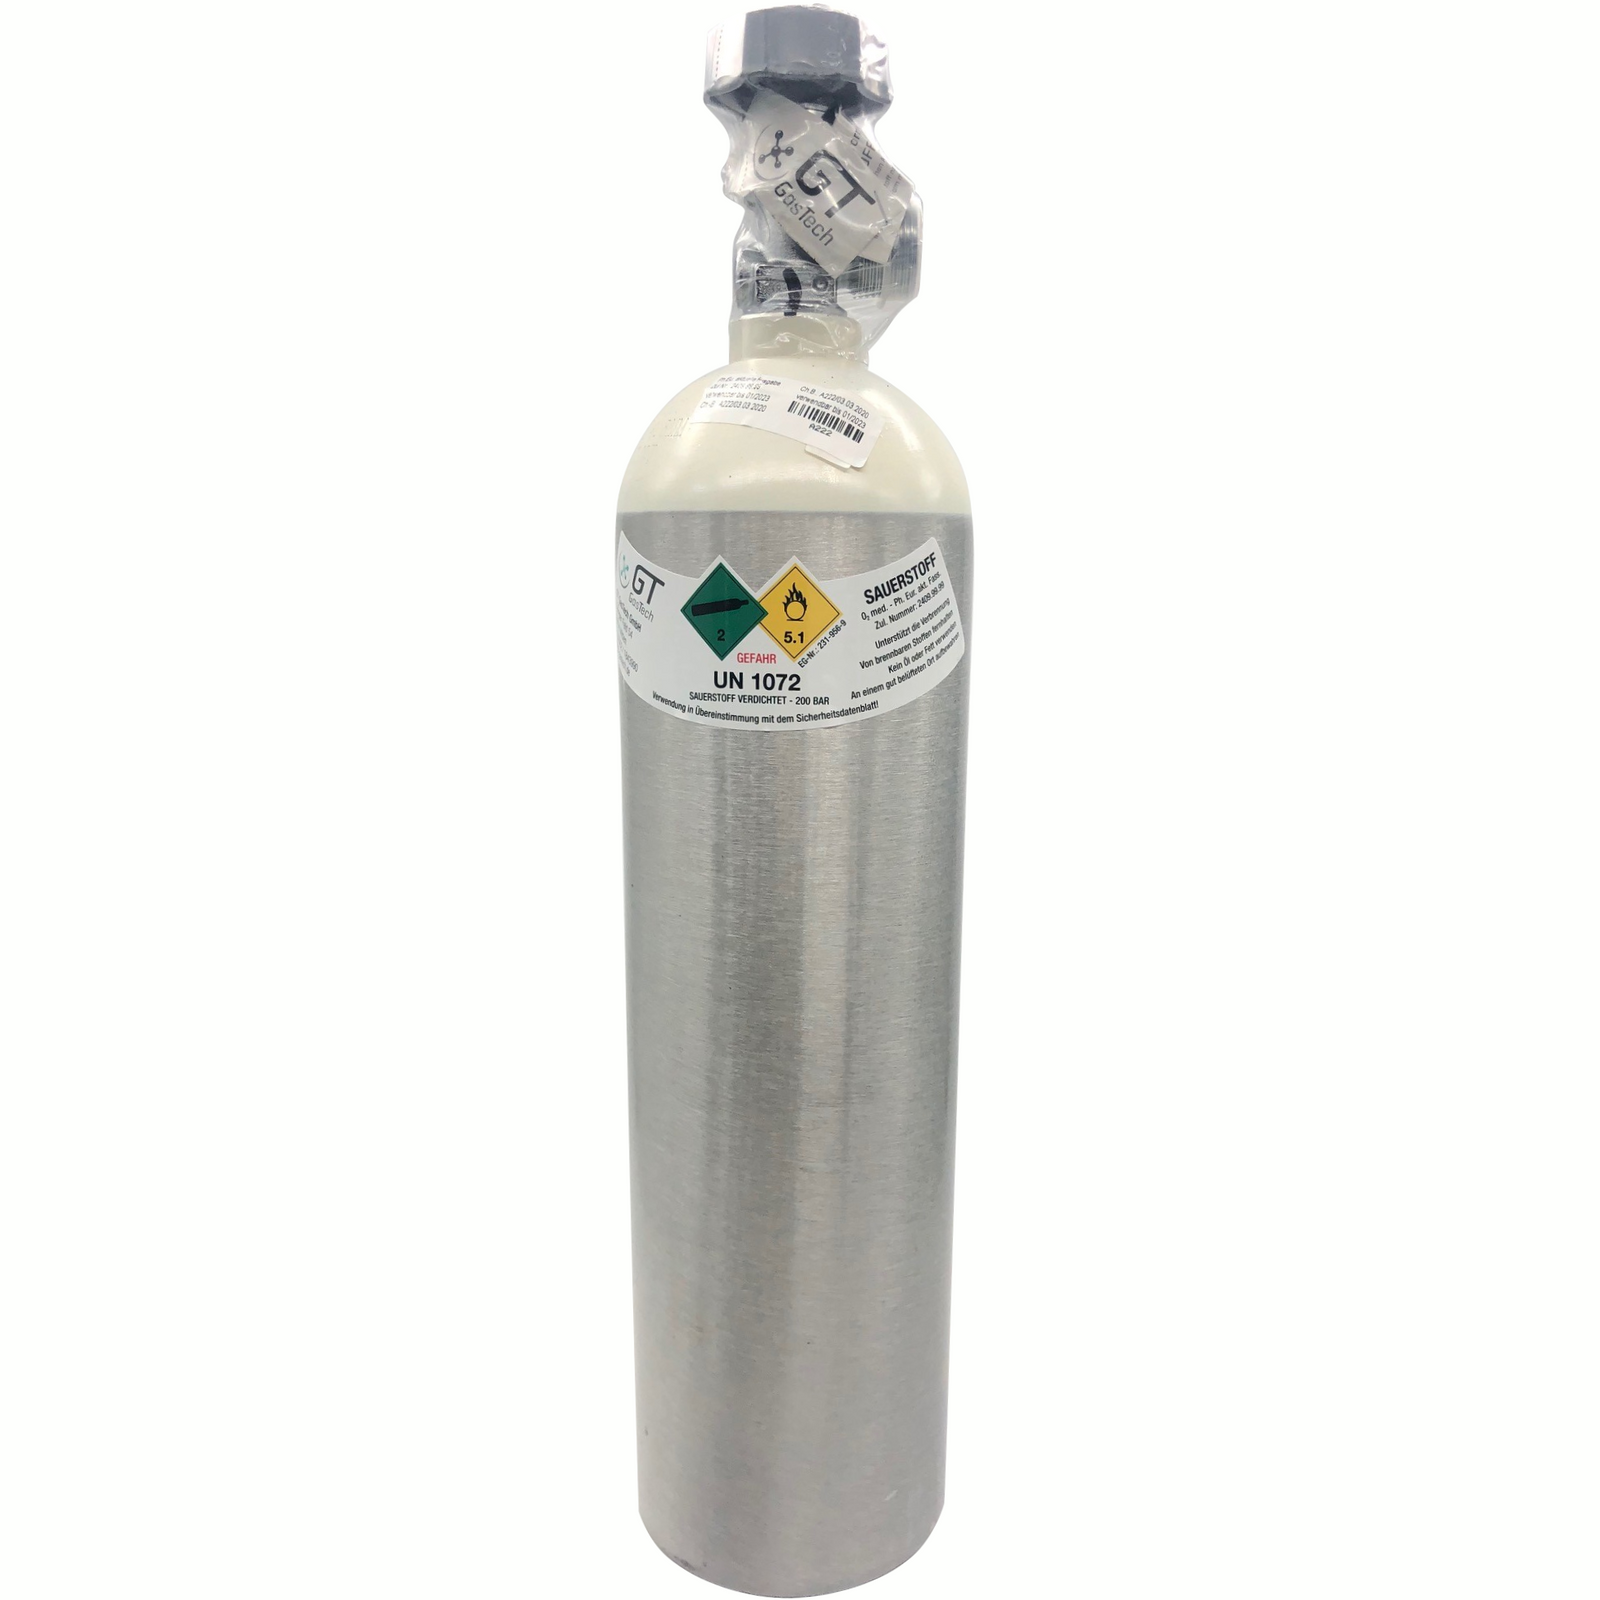 2 Liter Sauerstoffflasche 200 bar, 2 L medizinischer Sauerstoff